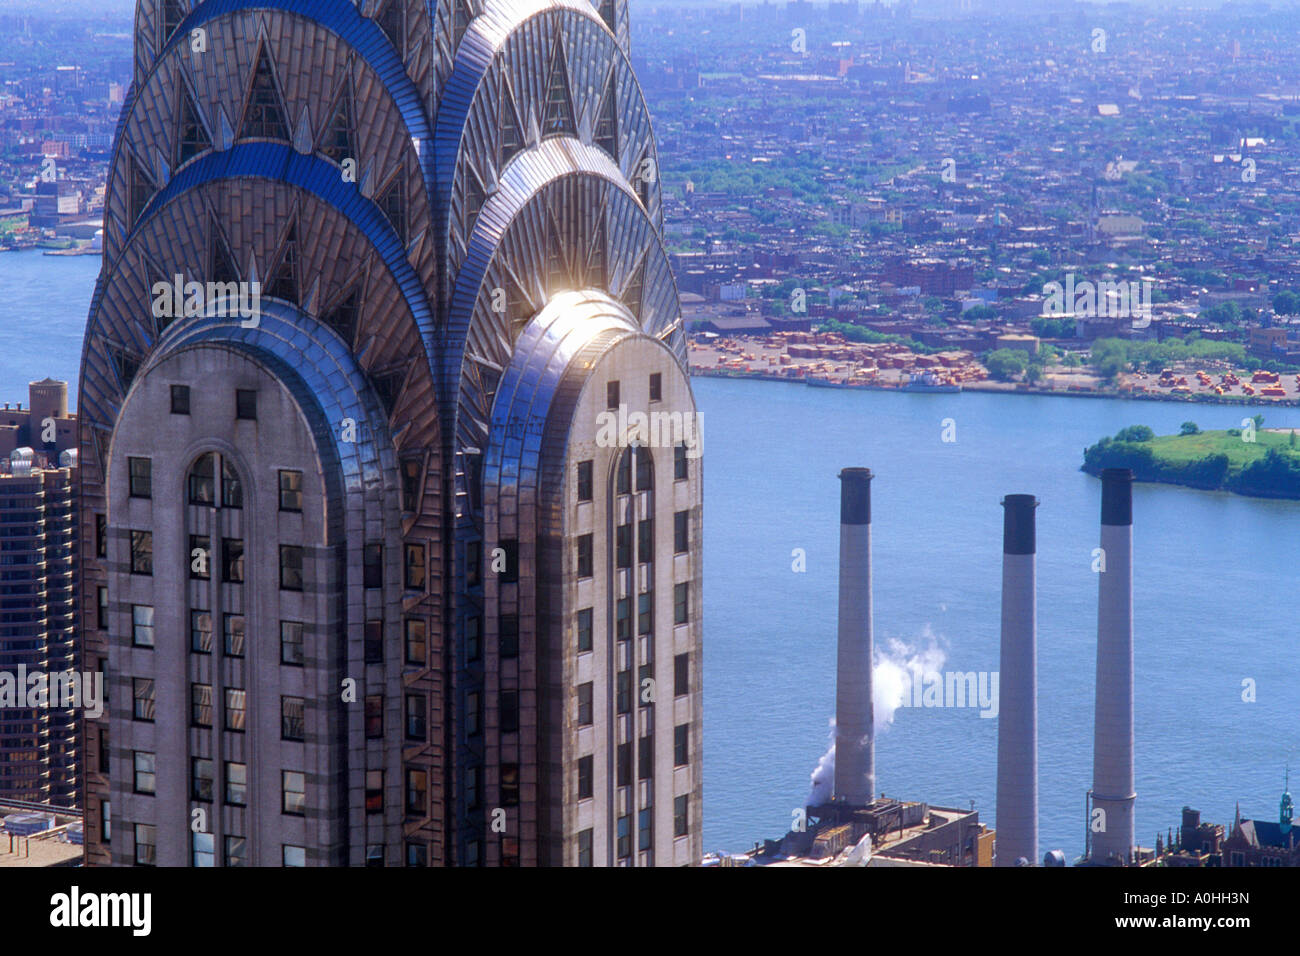 L'extérieur du bâtiment Chrysler ferme la couronne Art déco. Vue aérienne de New York. Midtown Manhattan, New York City, paysage urbain de East River et Queens. Banque D'Images